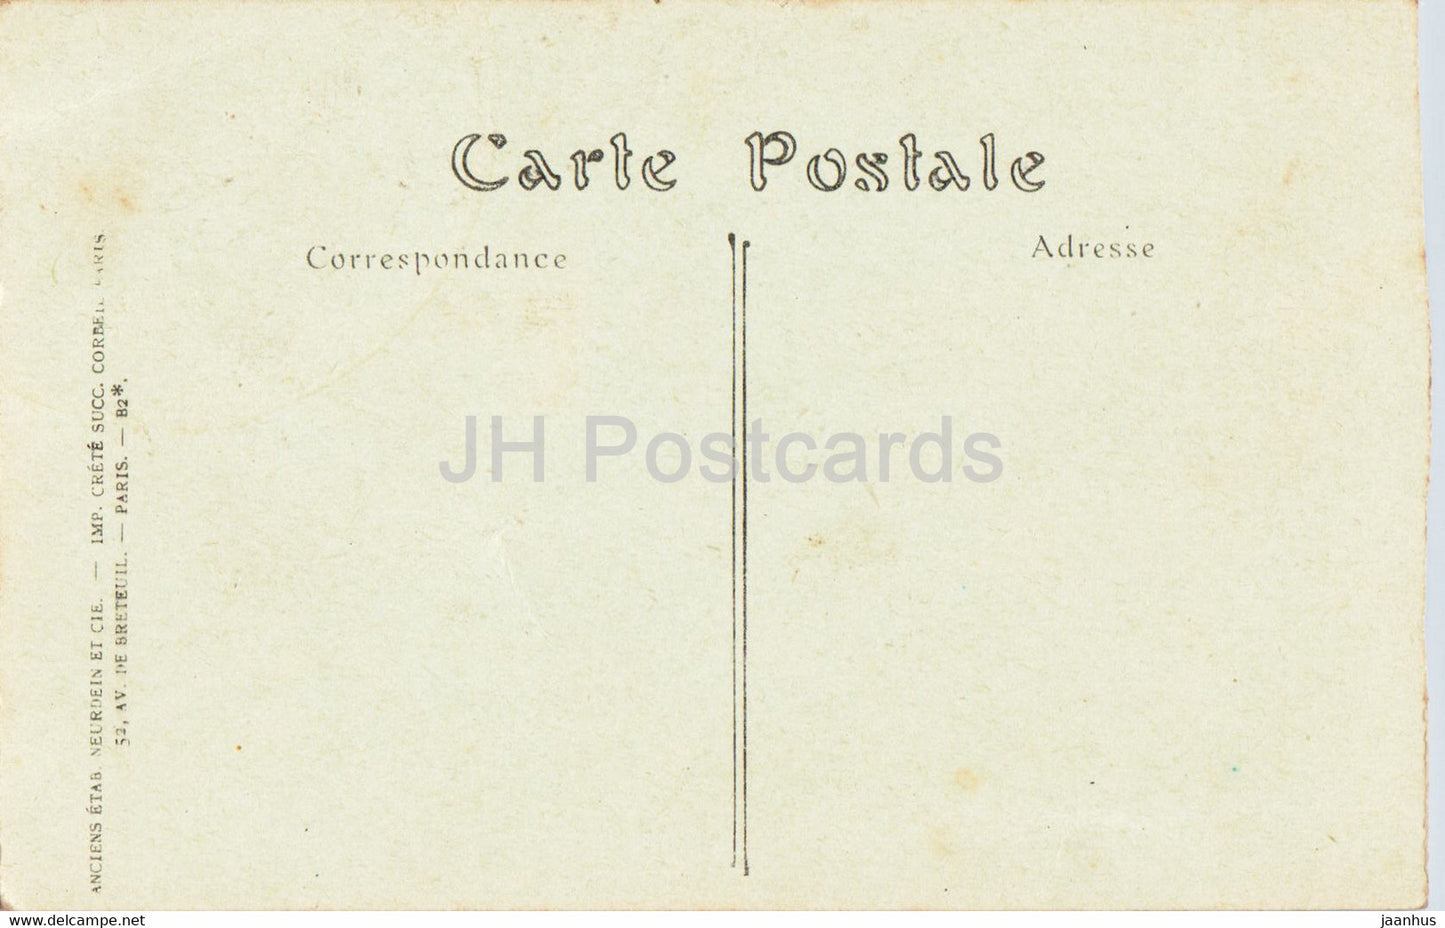 Palais de Versailles - Cote du Parc - 52 - old postcard - France - unused